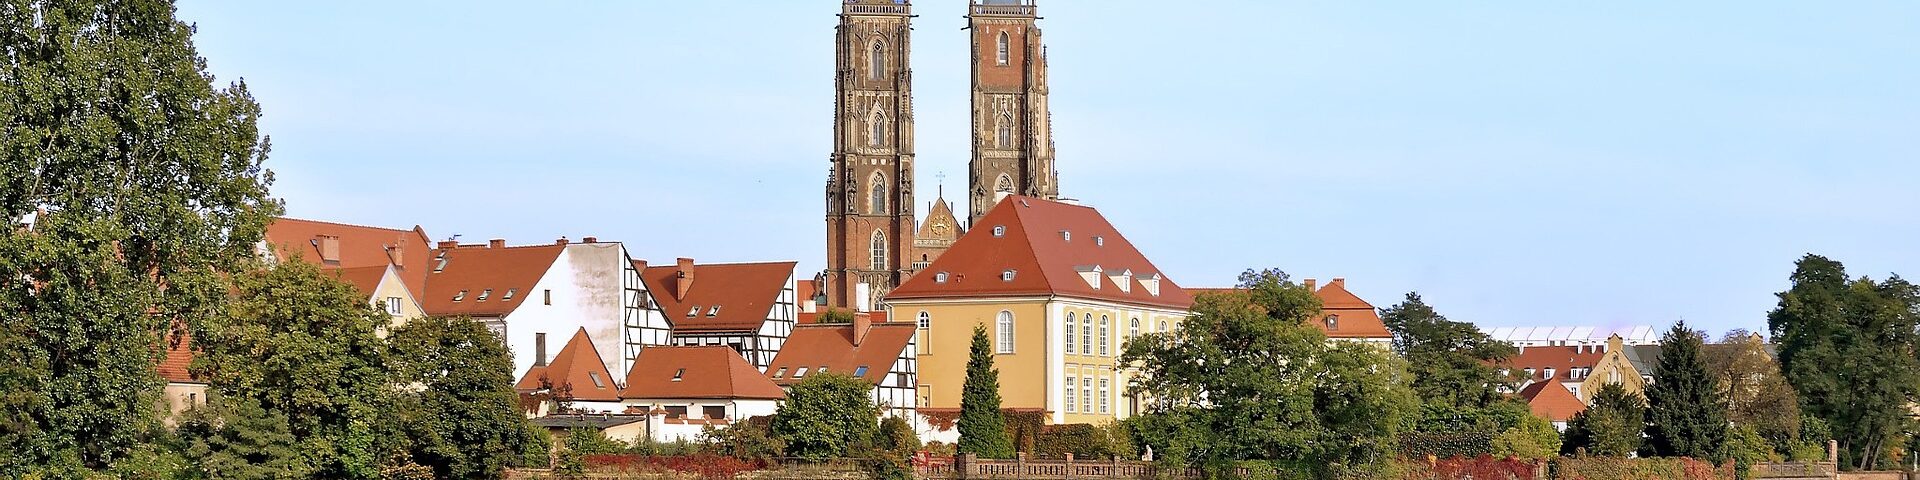 Atrakcje Wrocław